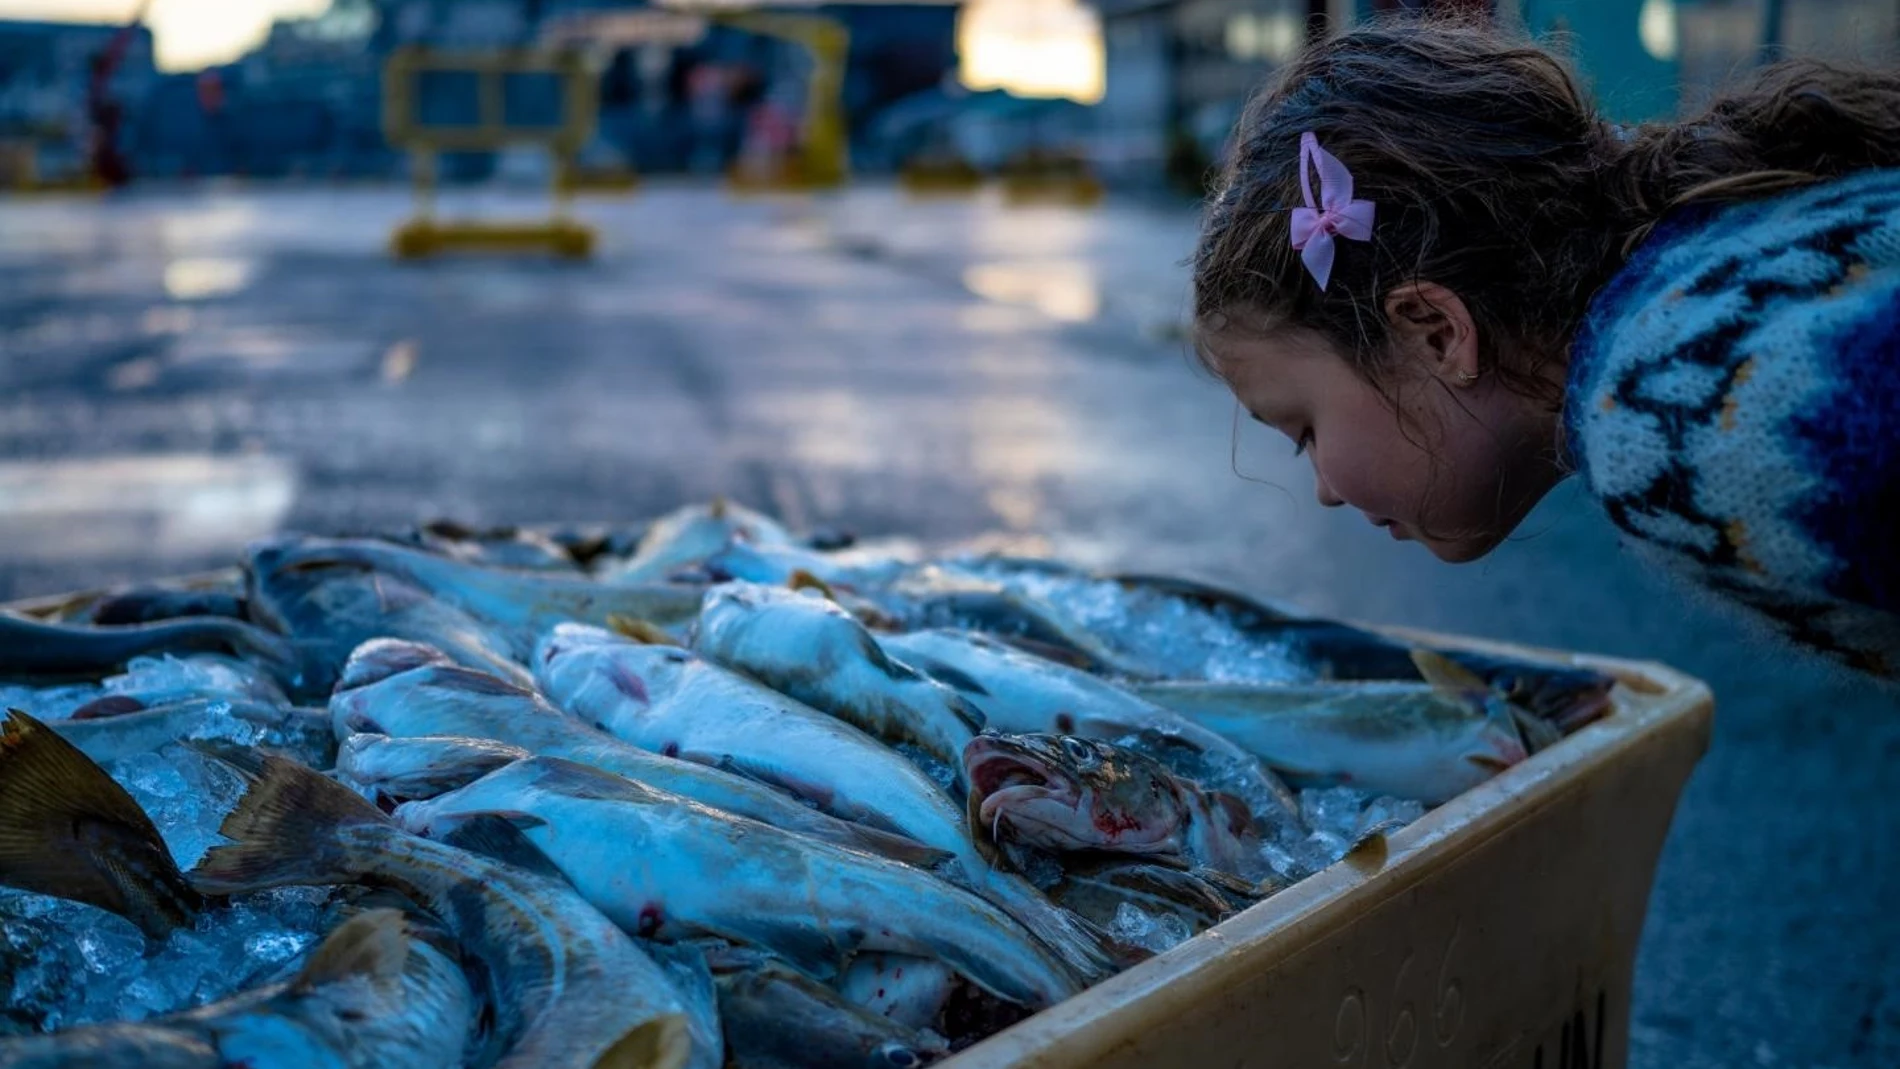 Una niña oliendo pescado.JÓN GÚSTAFSSON, DECODE GENETICS 07/10/2020